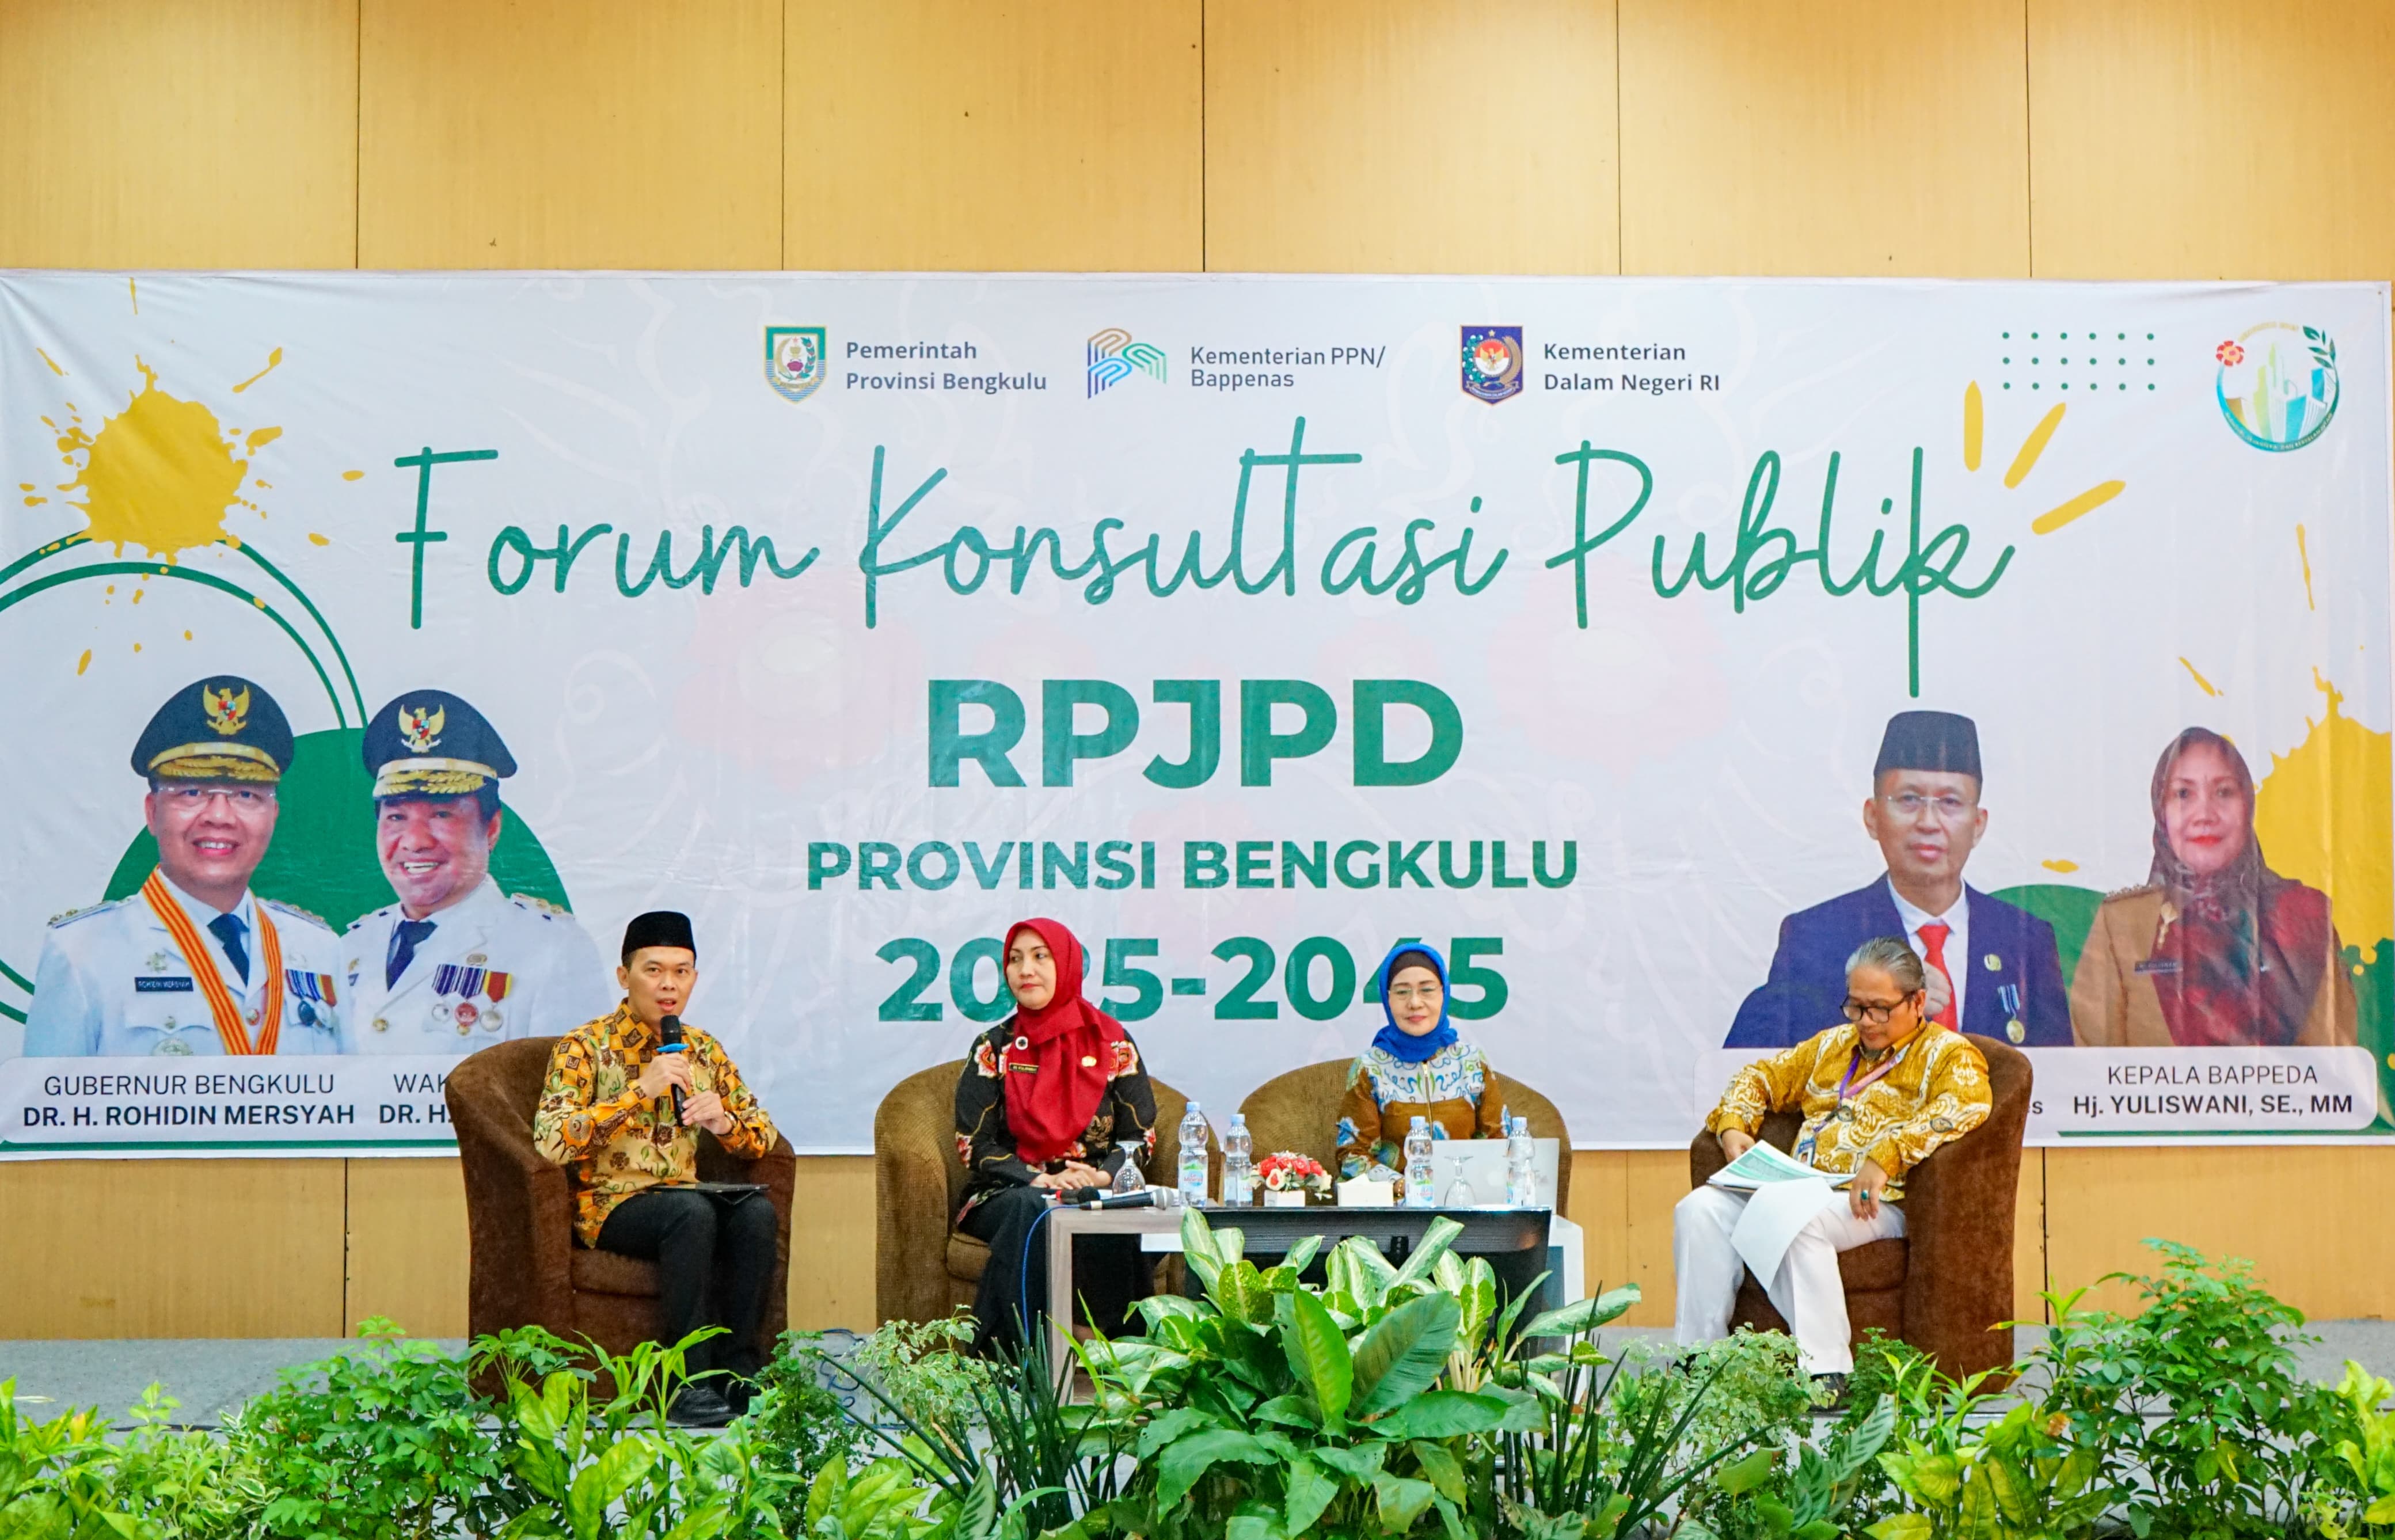 5 Poin Penting yang Disampaikan Gubernur Bengkulu Rohidin pada Forum Konsultasi Publik RPJPD Bengkulu